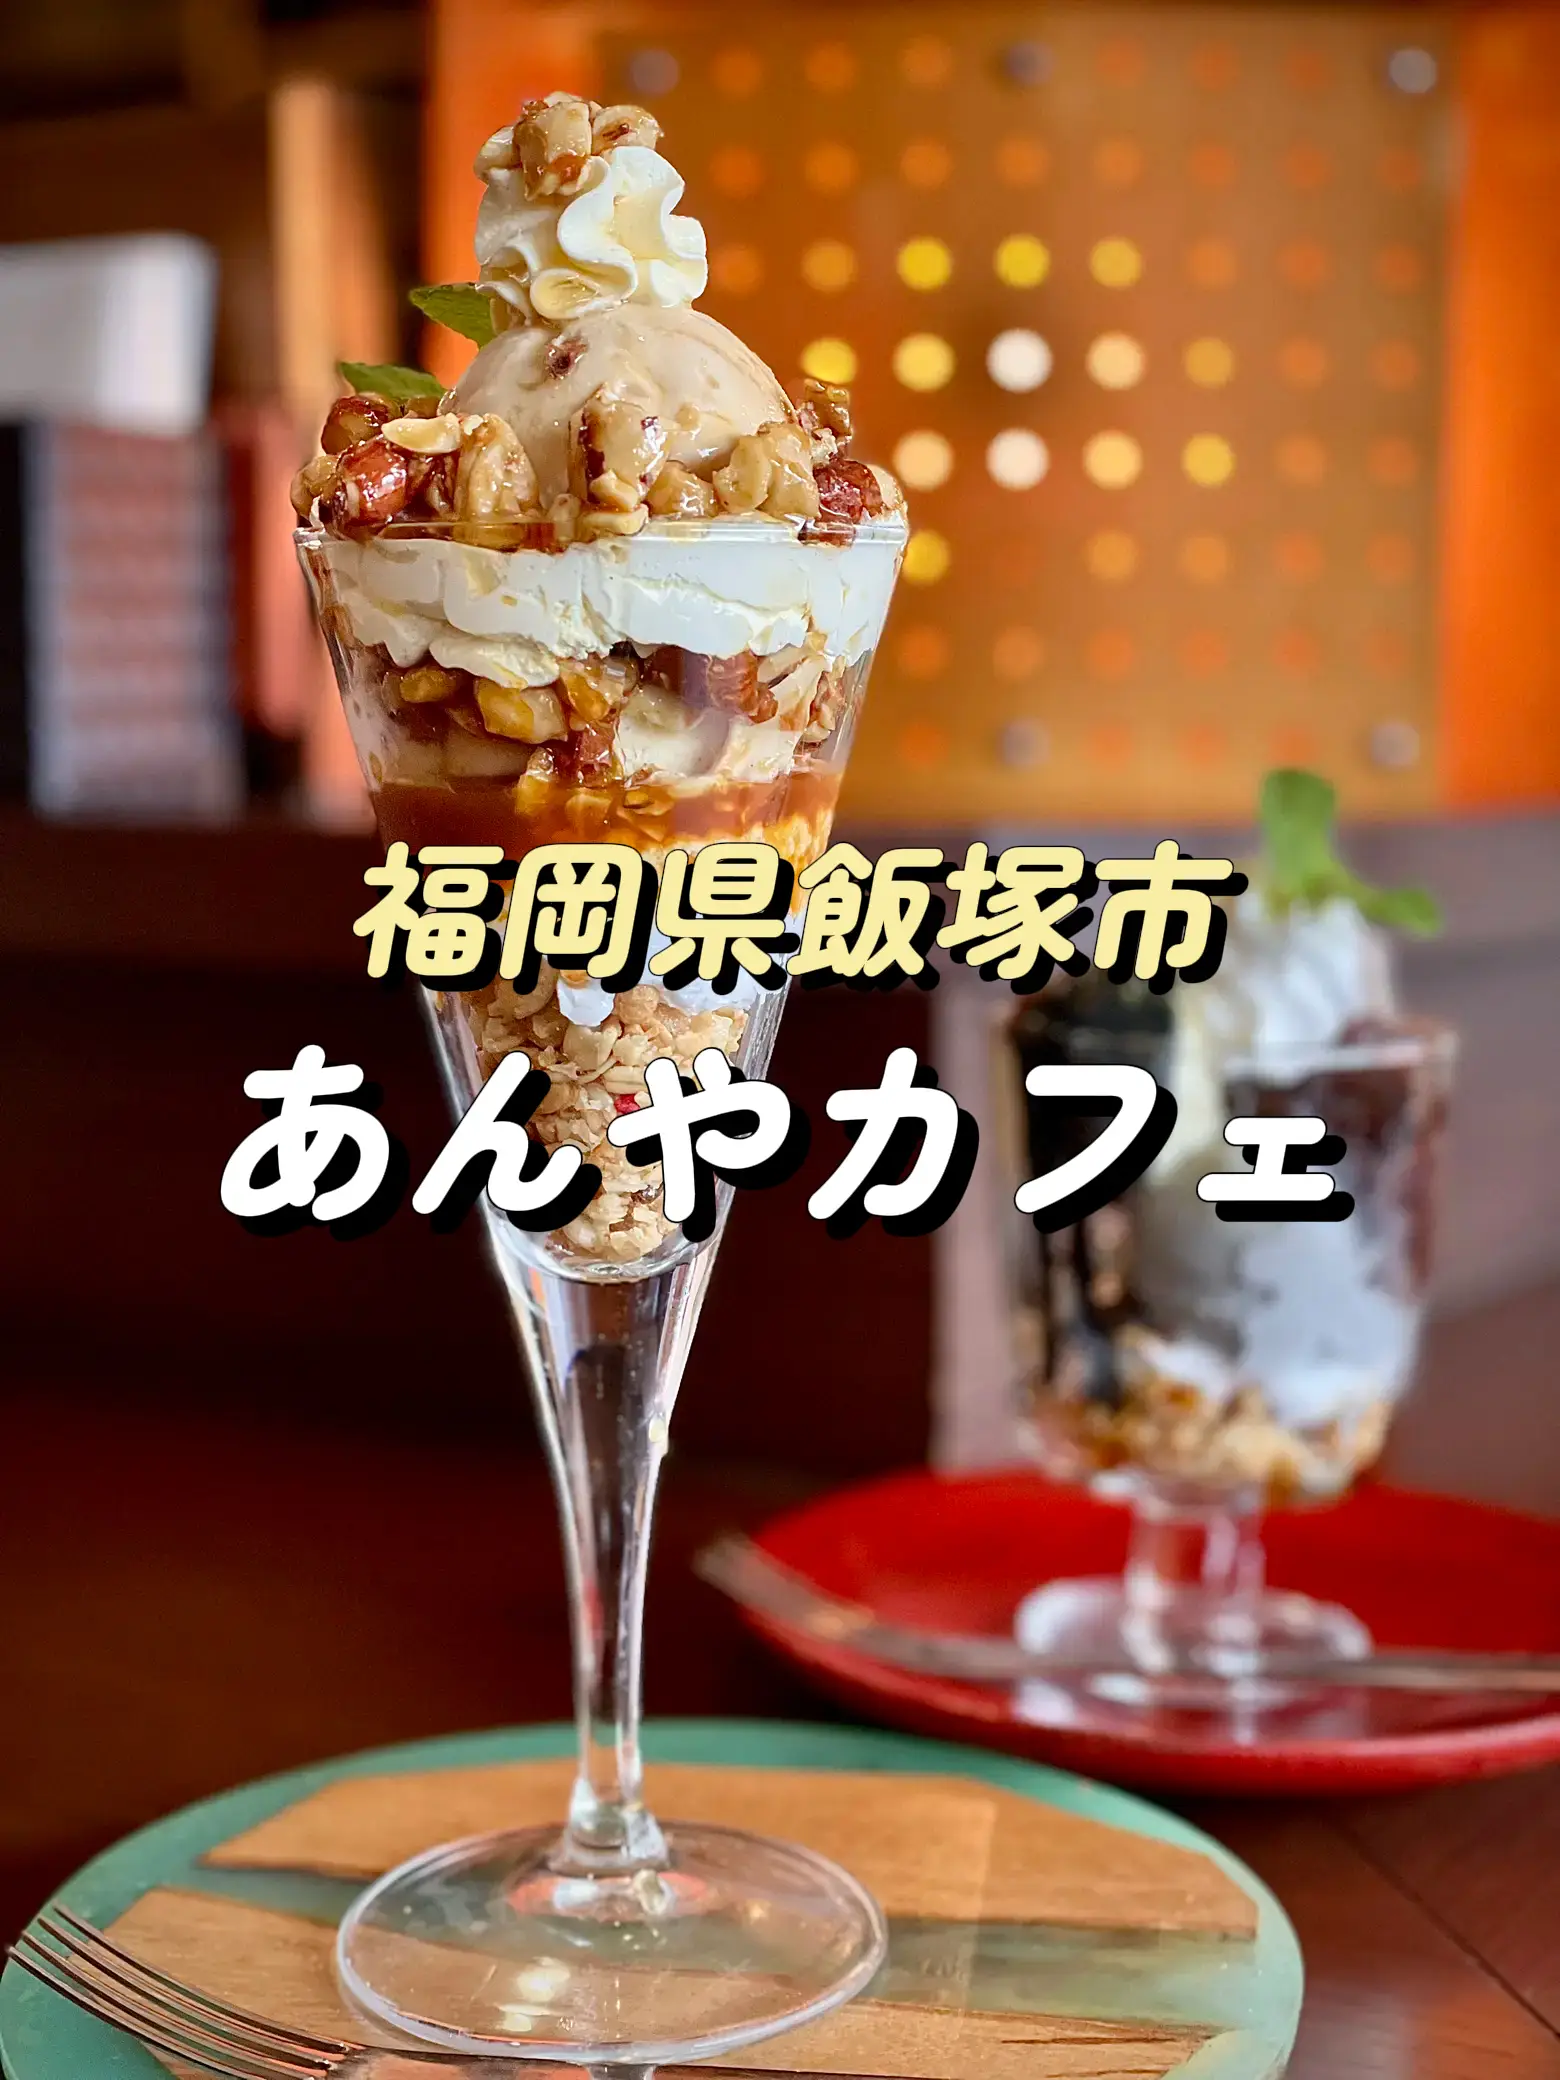 福岡グルメ 飯塚にある大自然派フード人気カフェ うえだっち 福岡グルメ が投稿したフォトブック Lemon8